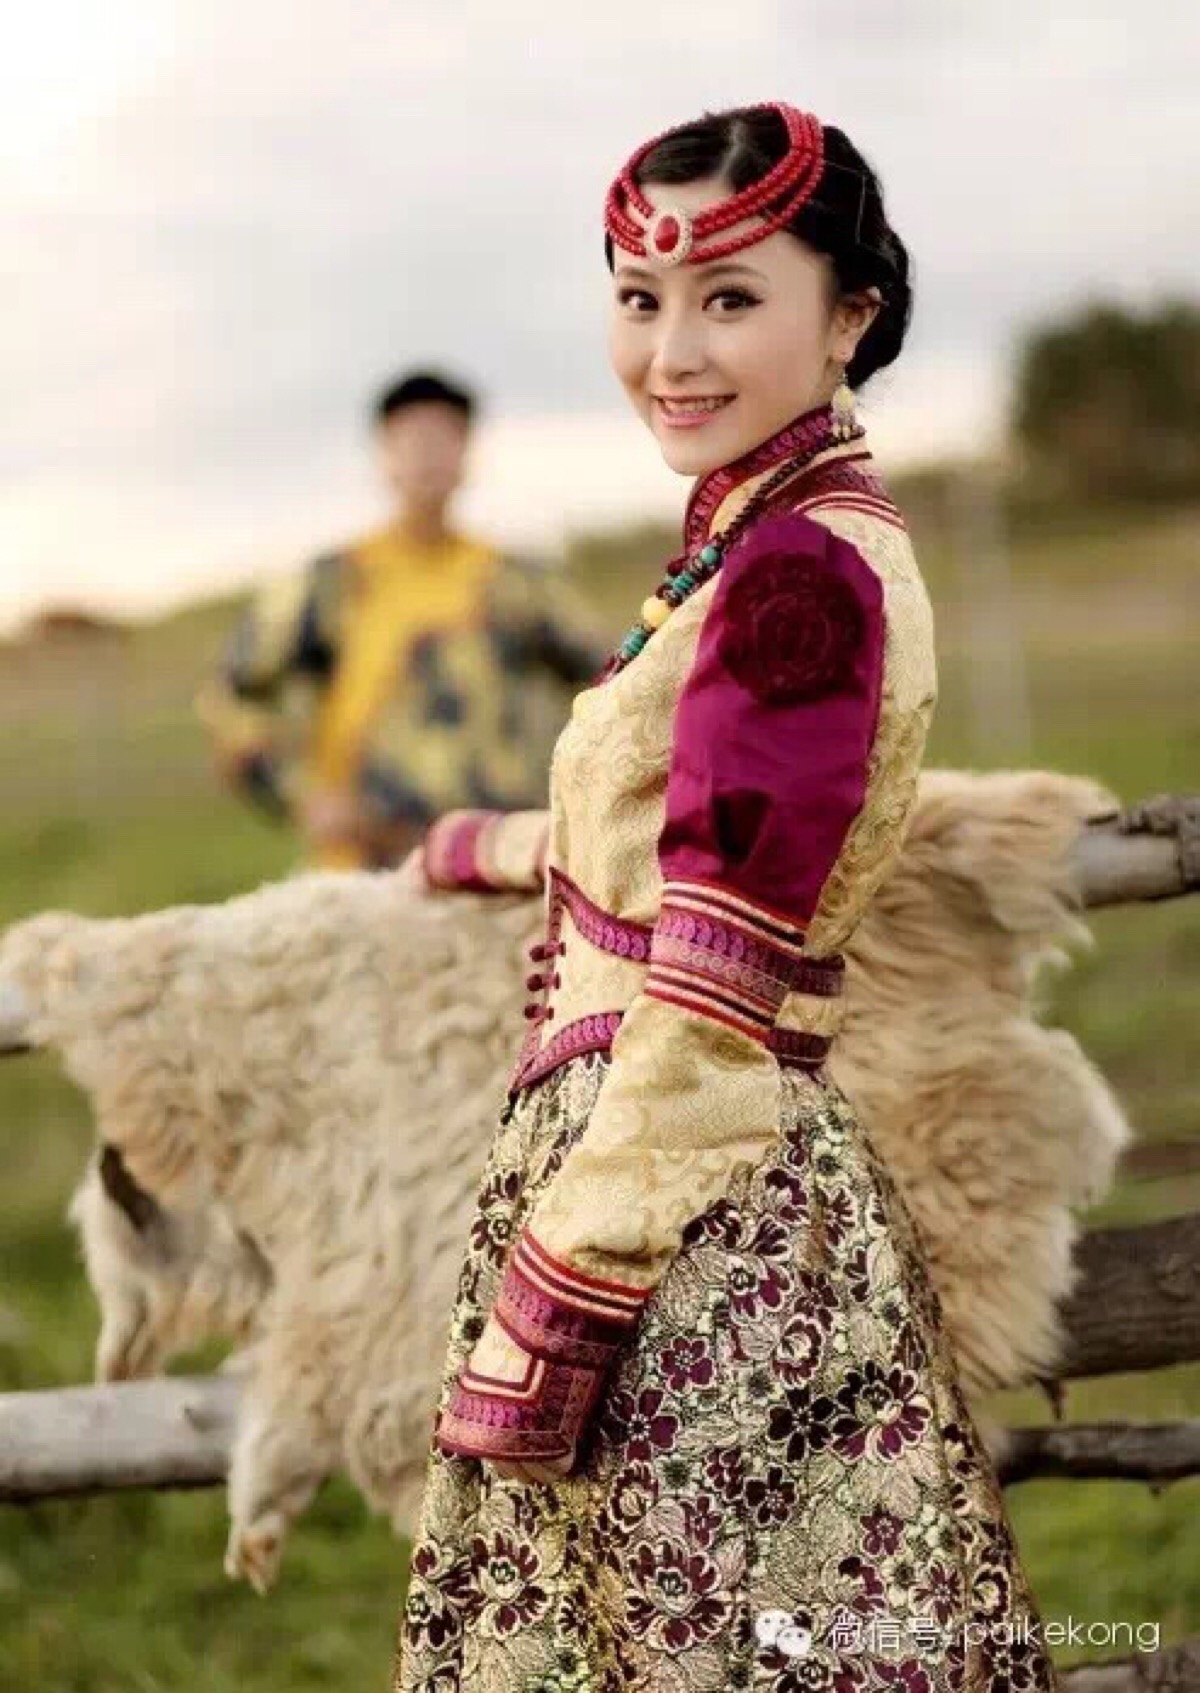 镜头下的蒙古国 漂亮女孩穿着时髦性感开放[54P]|无奇不有 - 武当休闲山庄 - 稳定,和谐,人性化的中文社区